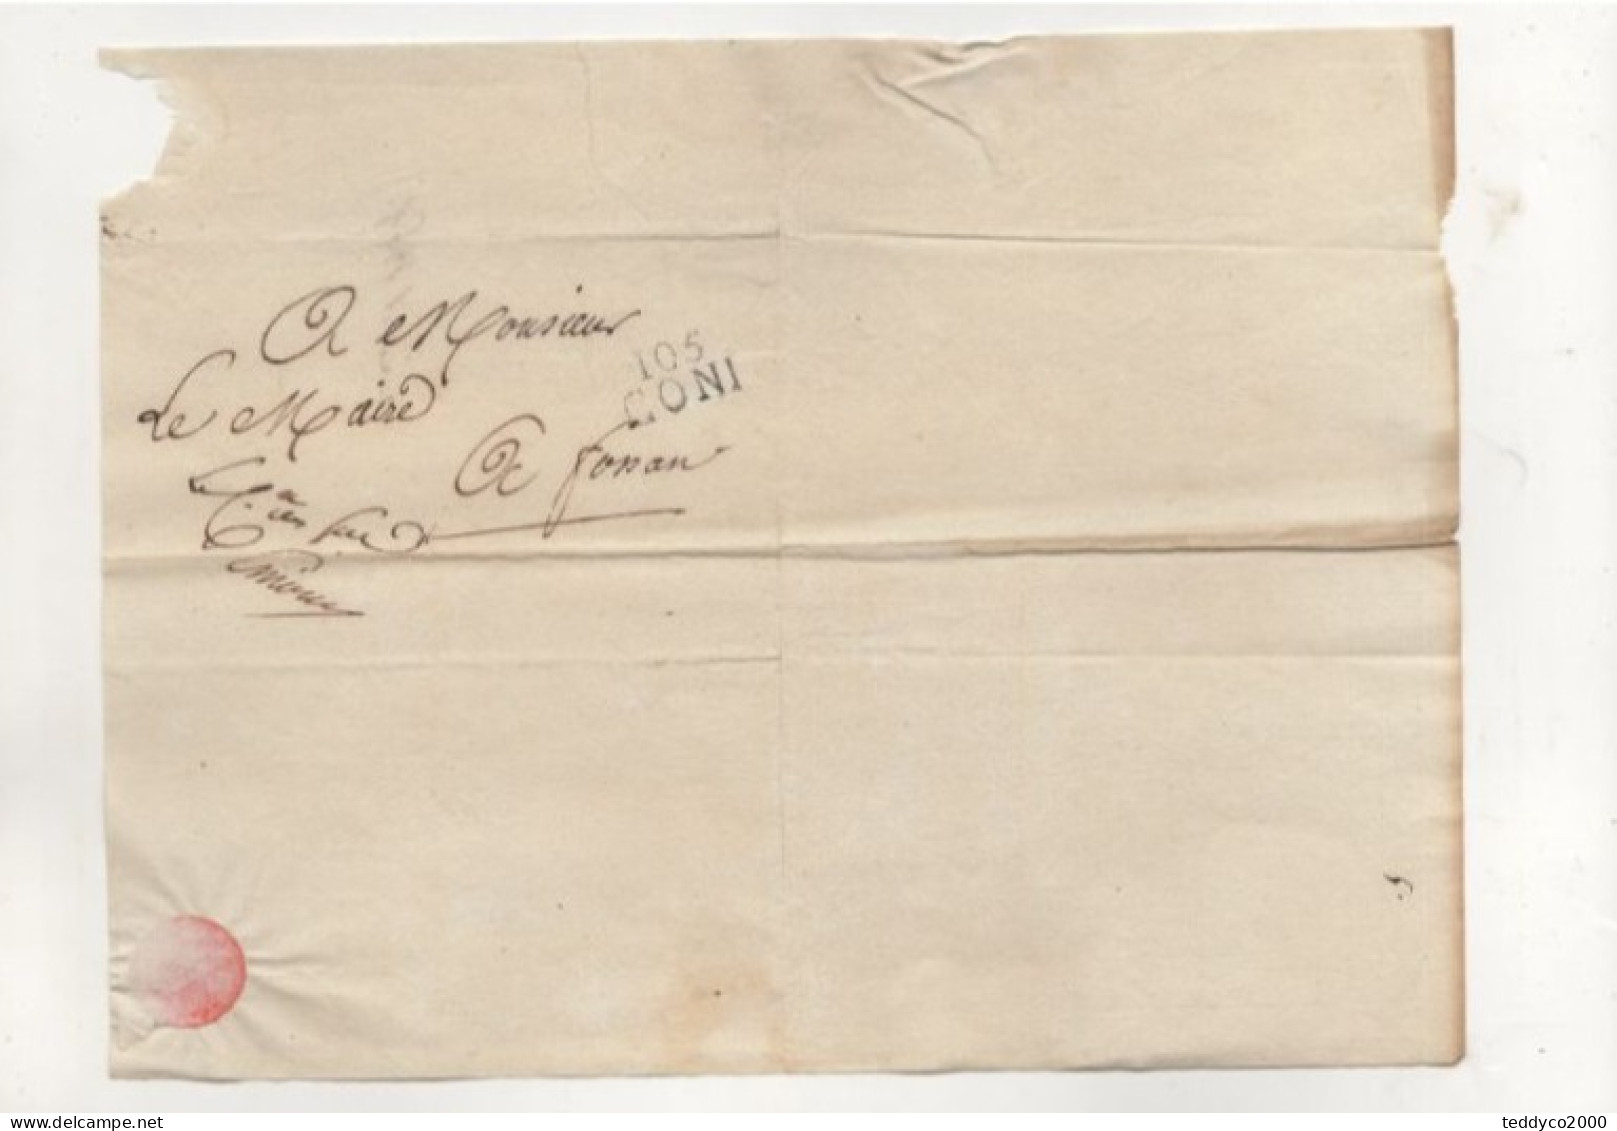 PREFILATELICA DA CUNEO A FOSSANO PERIODO FRANCESE Carta Filigranata "Beinette" Corsivo Timbro CONI 105 Grande - 1. ...-1850 Prephilately